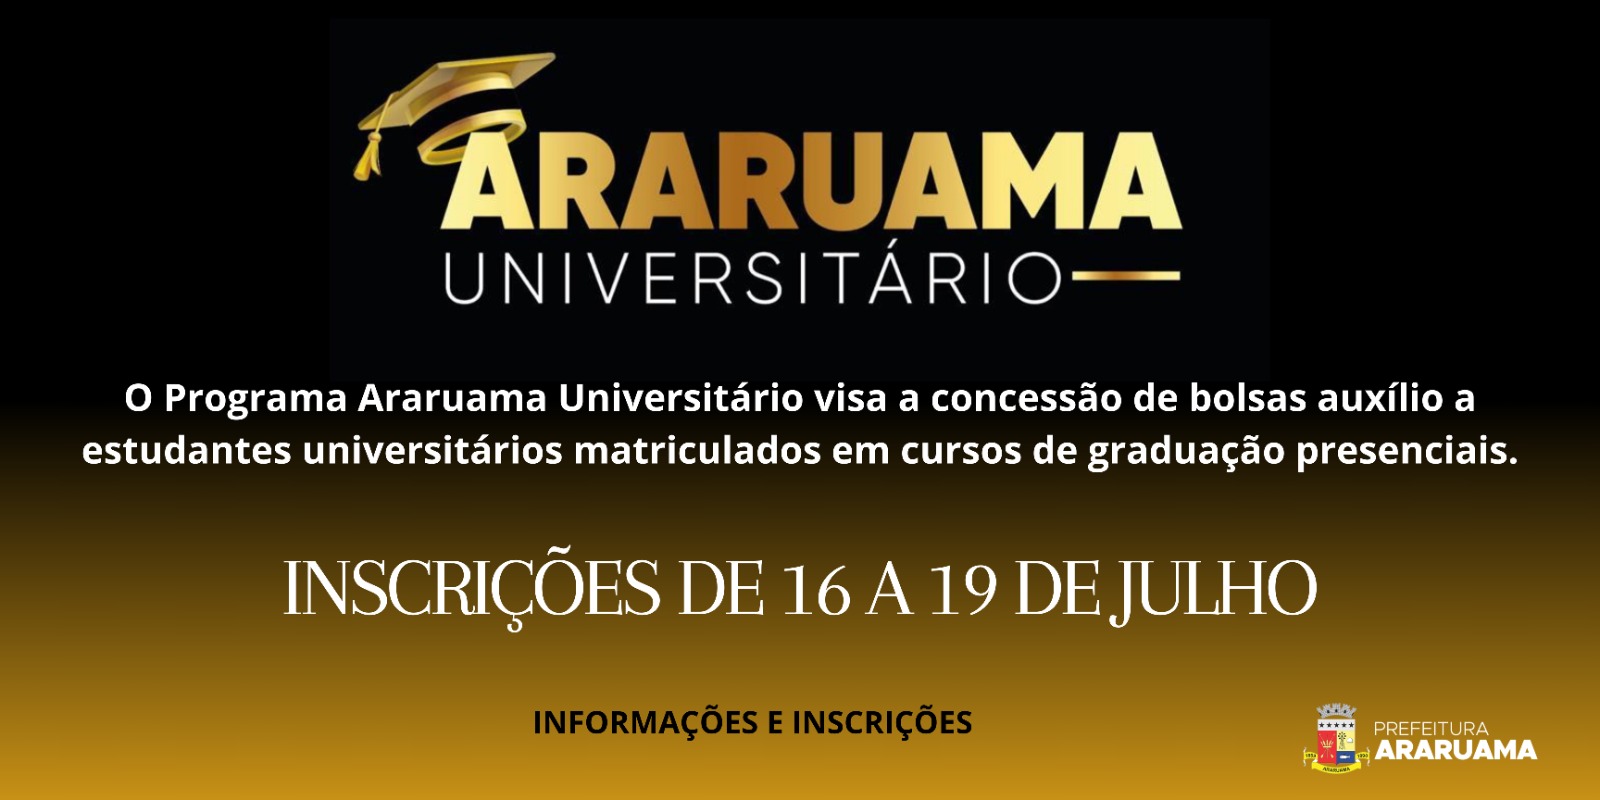 Araruama Universitario